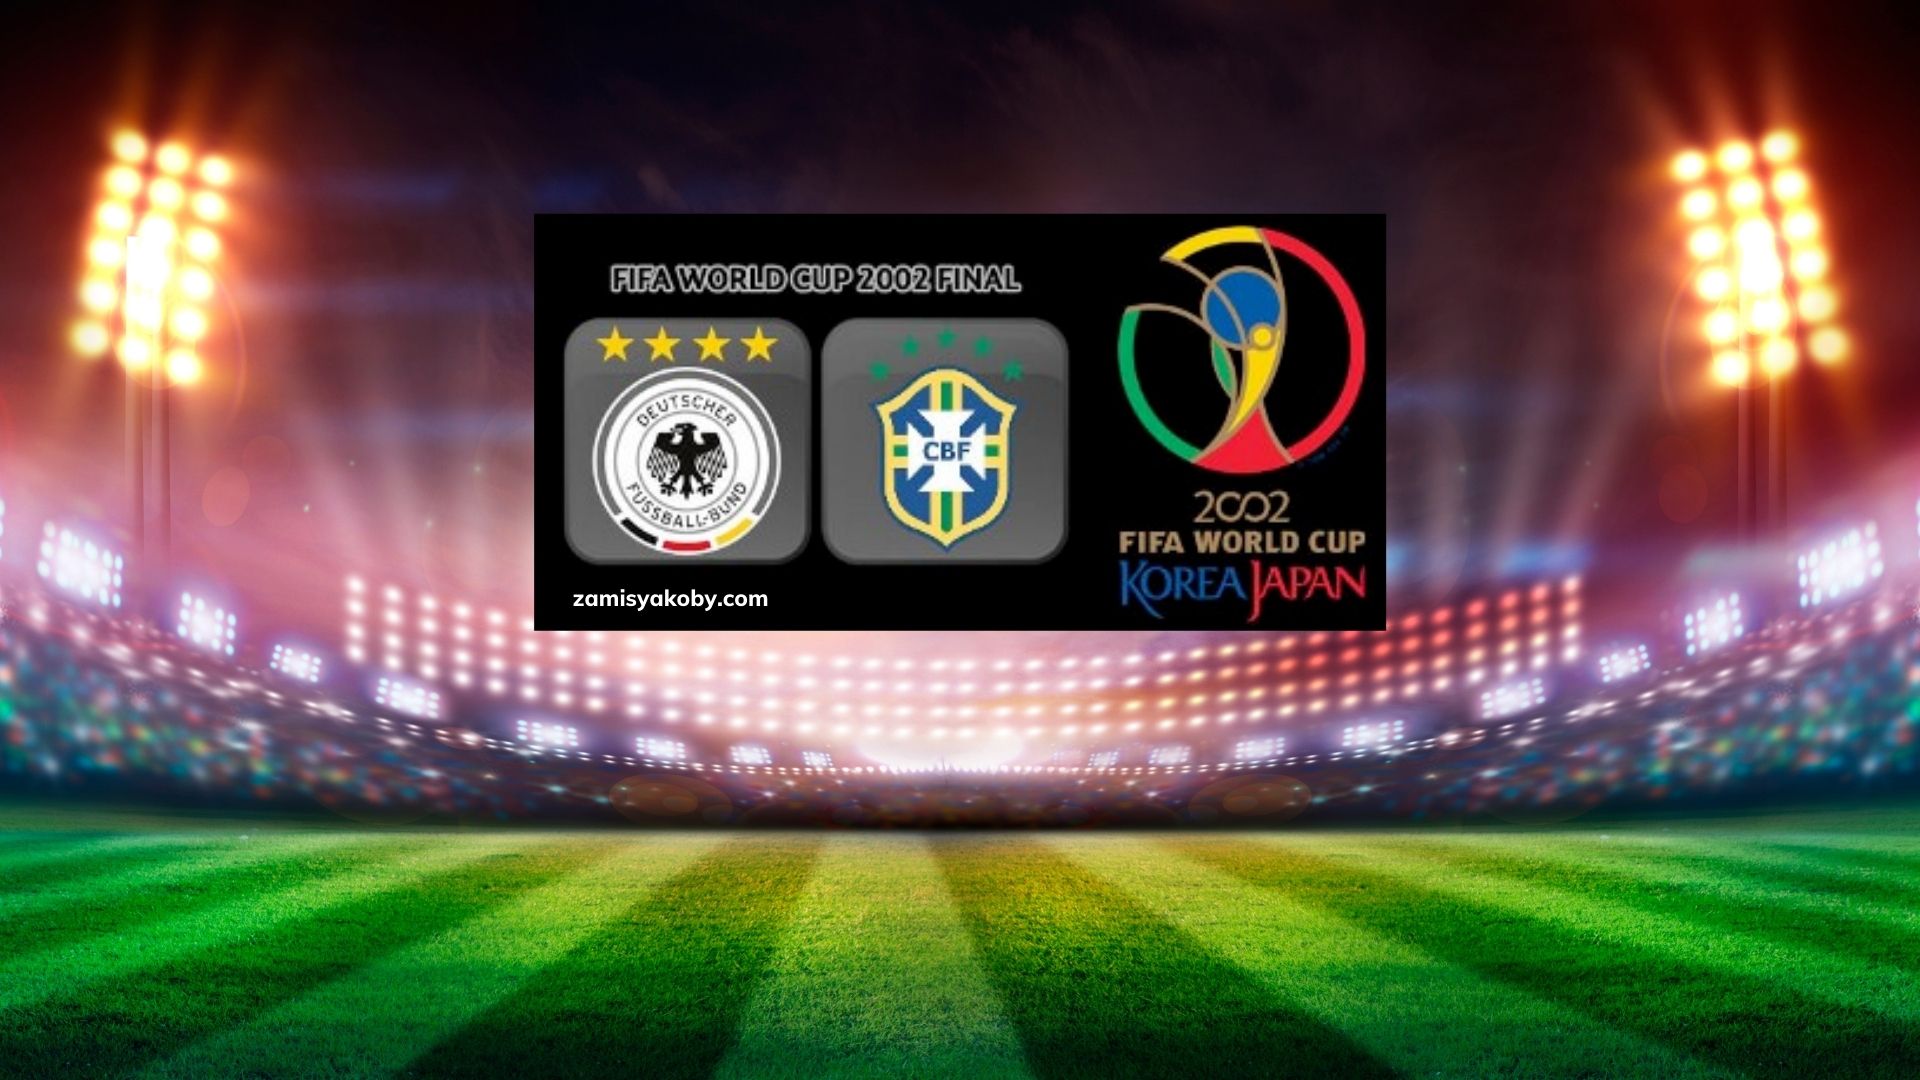 Germany vs Brazil World Cup 2002